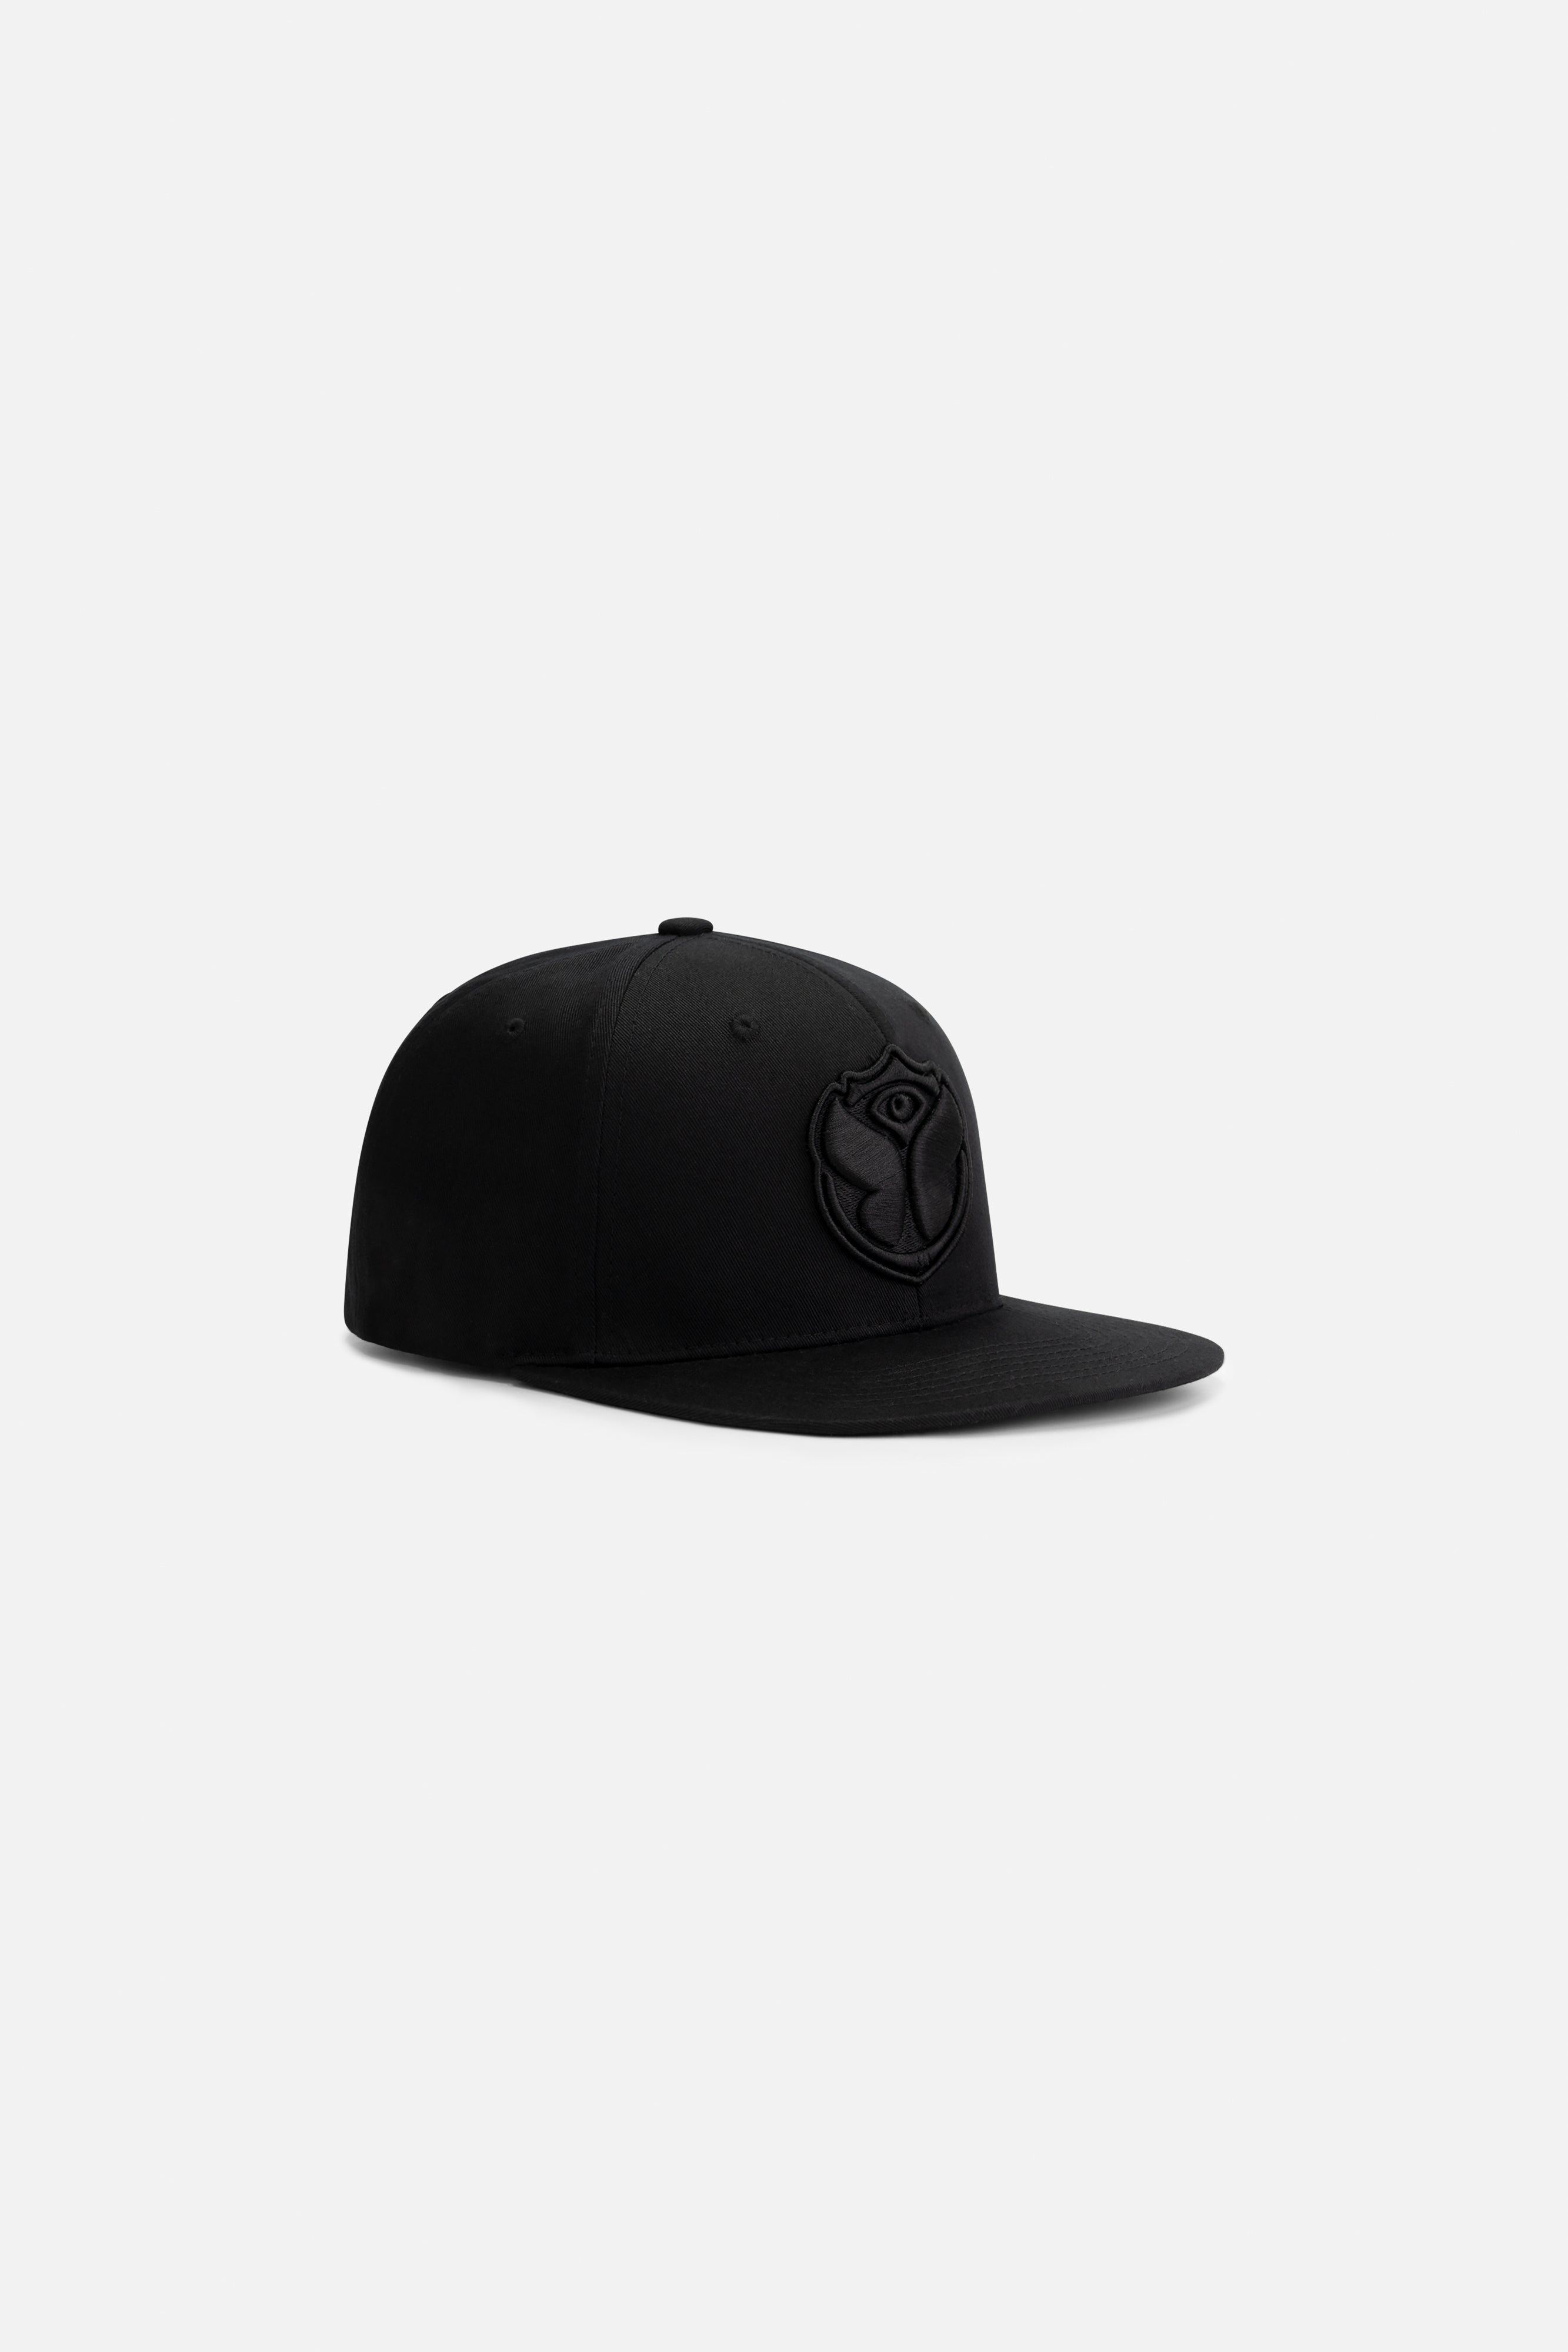 BLACK ICON CAP – Tomorrowland Store